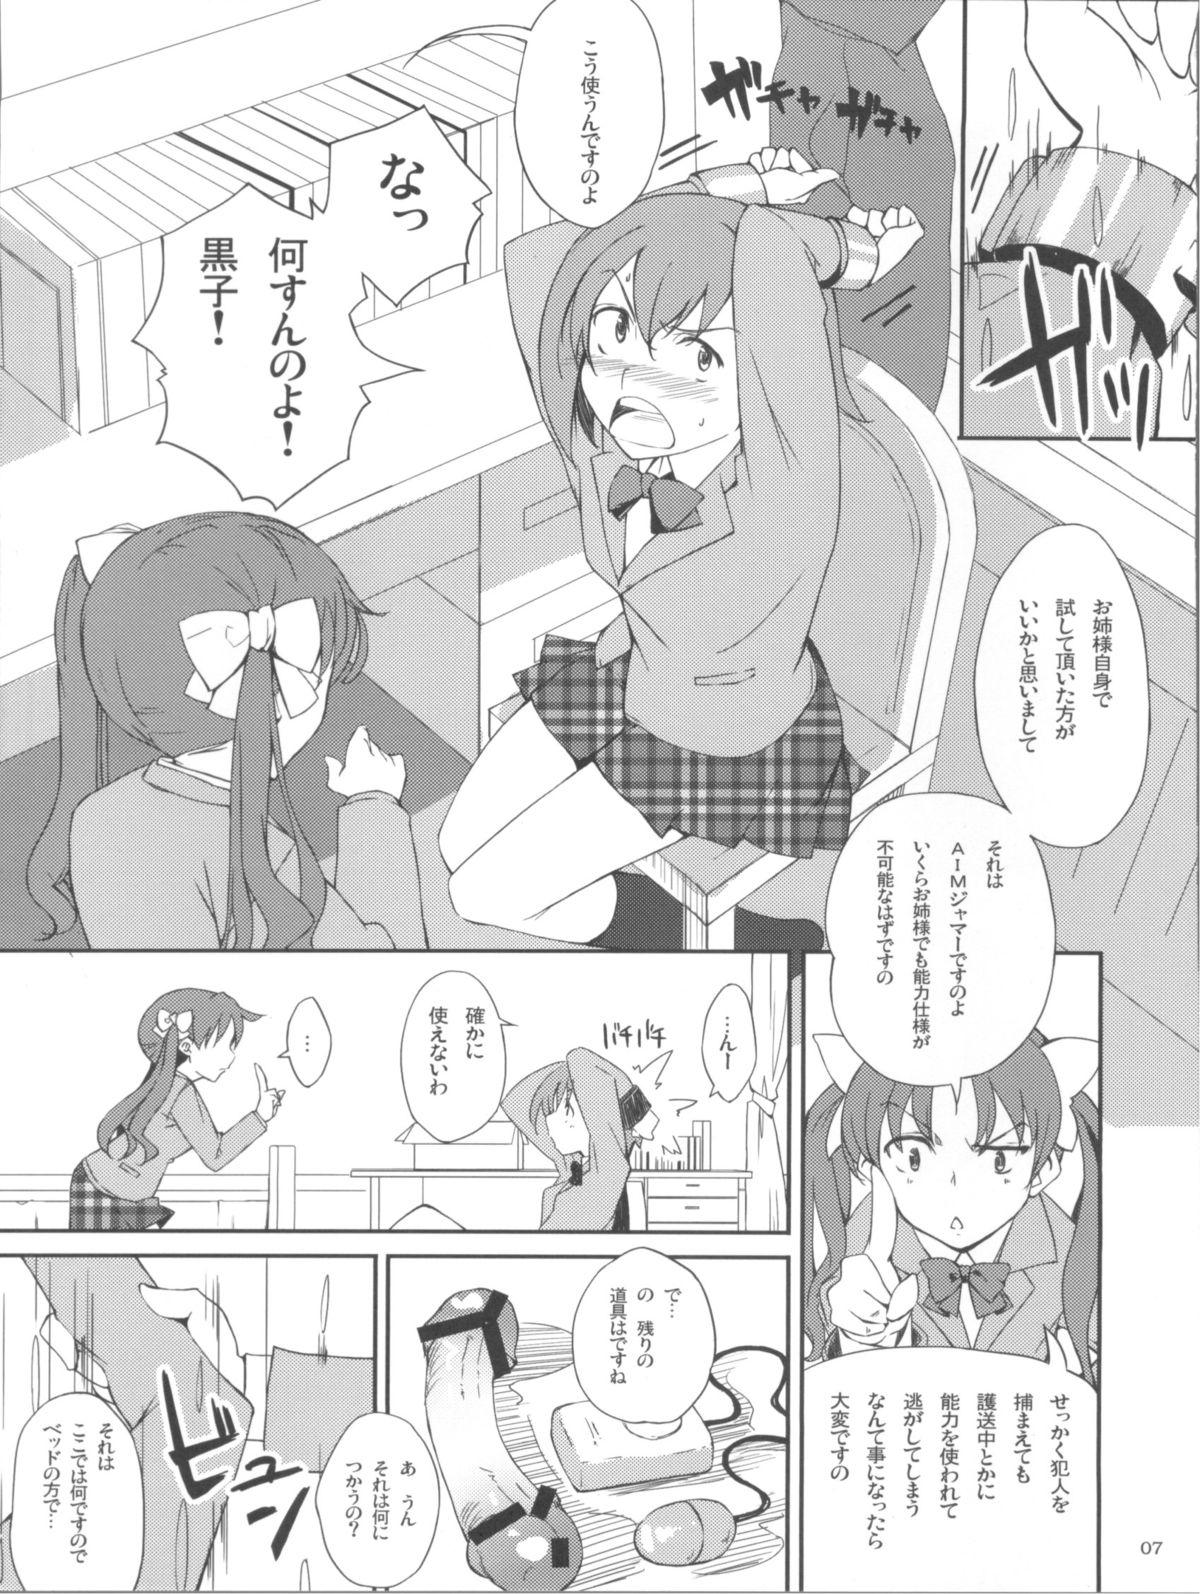 Assfucked Desu no!! - Toaru kagaku no railgun Toaru majutsu no index Femboy - Page 7